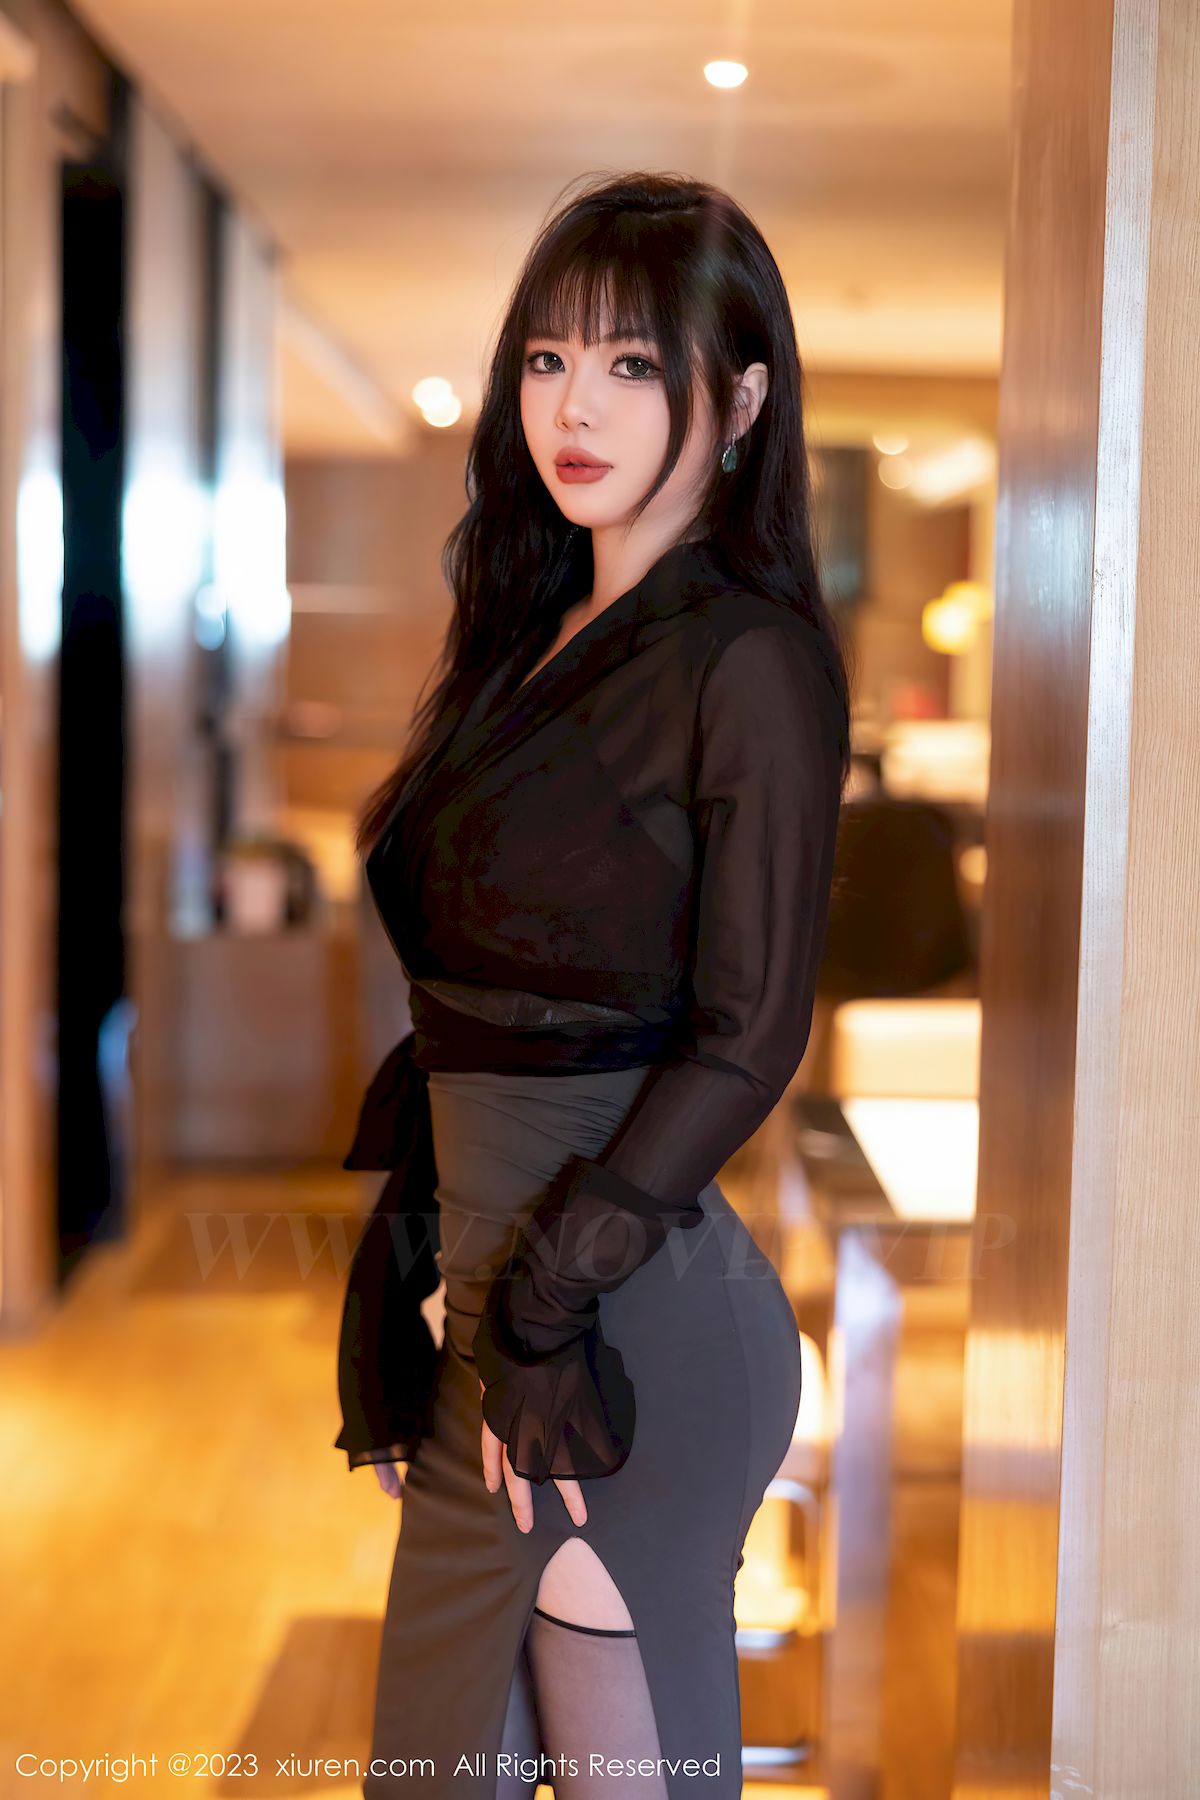 秀人网模特Arude薇薇黑色服饰搭配黑丝短裙性感写真